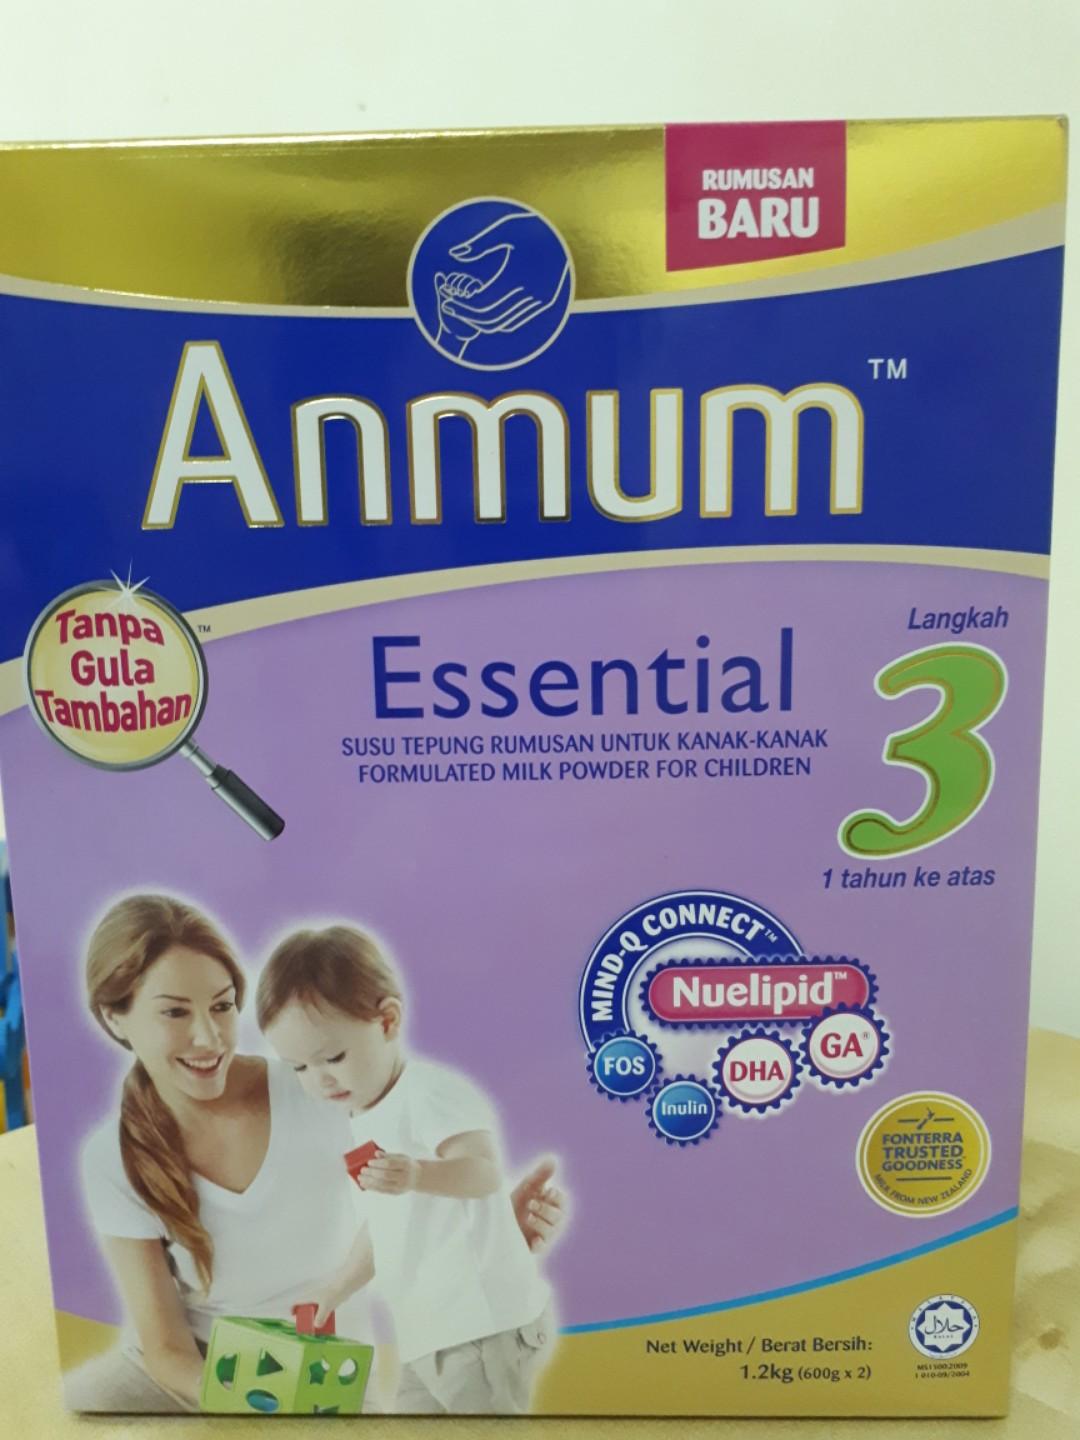 Susu Anmum Langkah 3 (2 kotak), Babies u0026 Kids, Nursing u0026 Feeding 